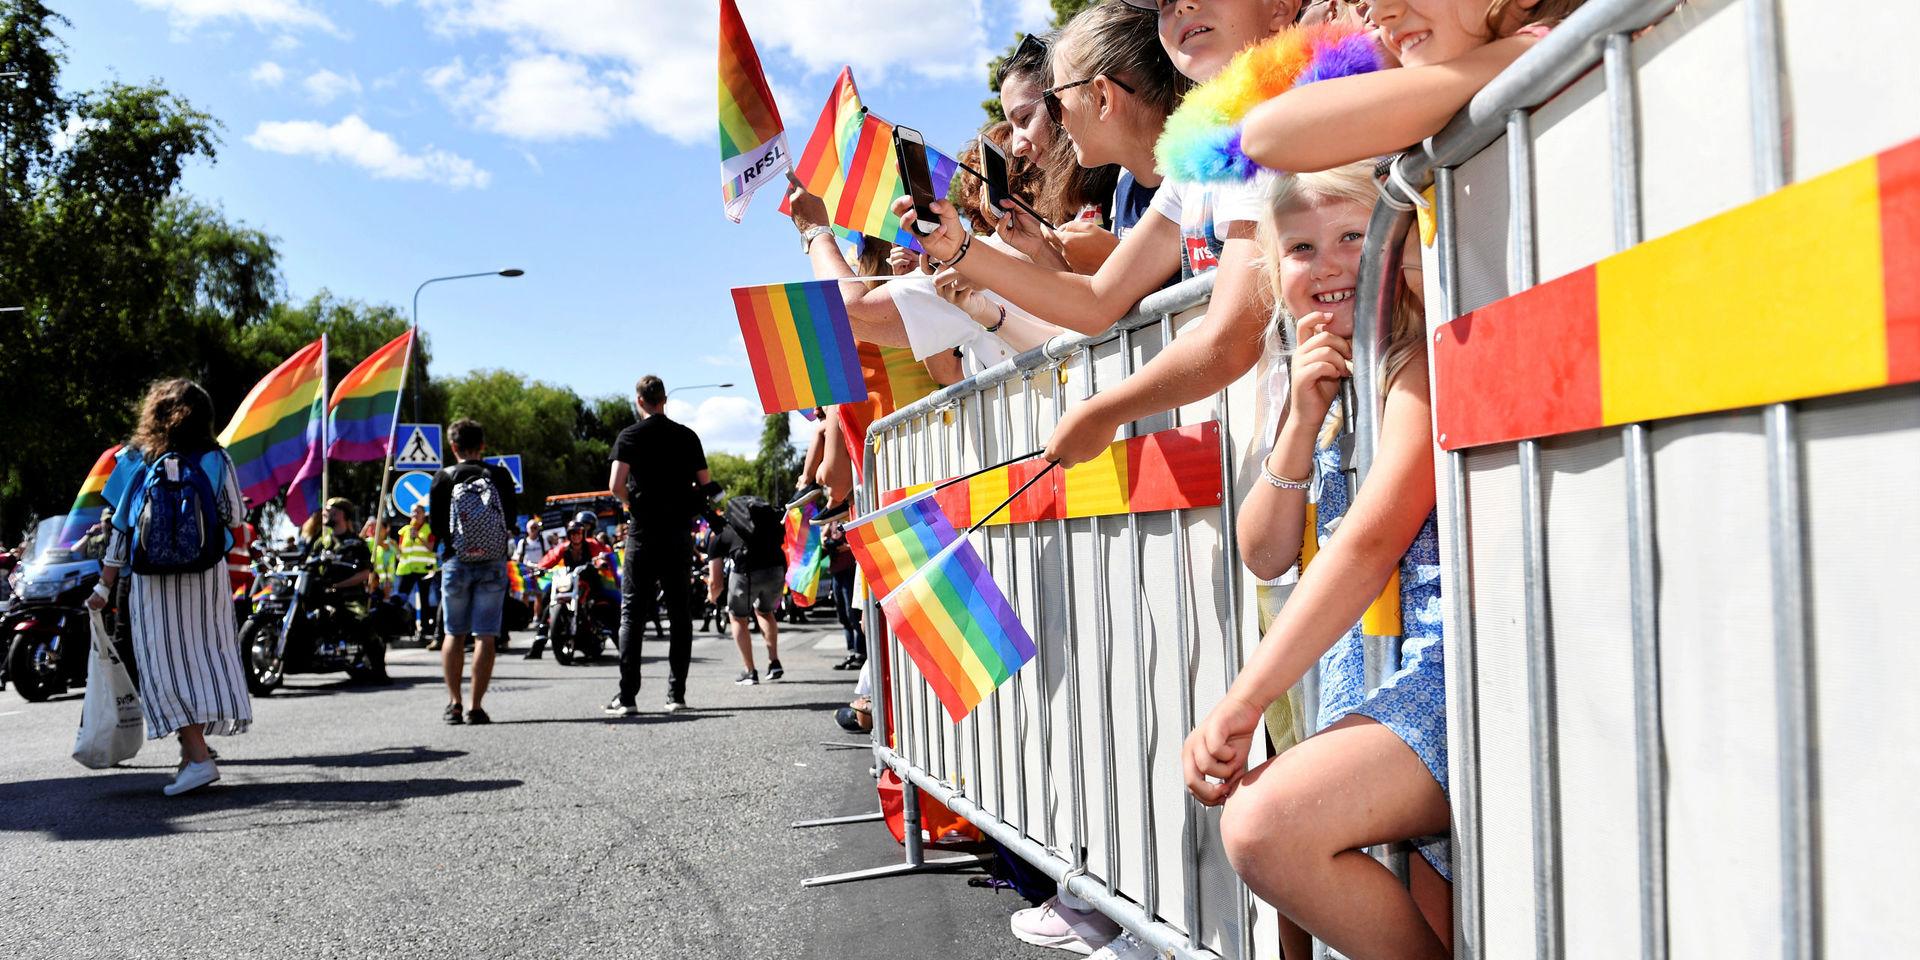 Unga människor borde inte gå i pridetåg eftersom pridefestivaler spär på könsosäkerheten, anser insändarskribenten Jan-Åke Karlsson.